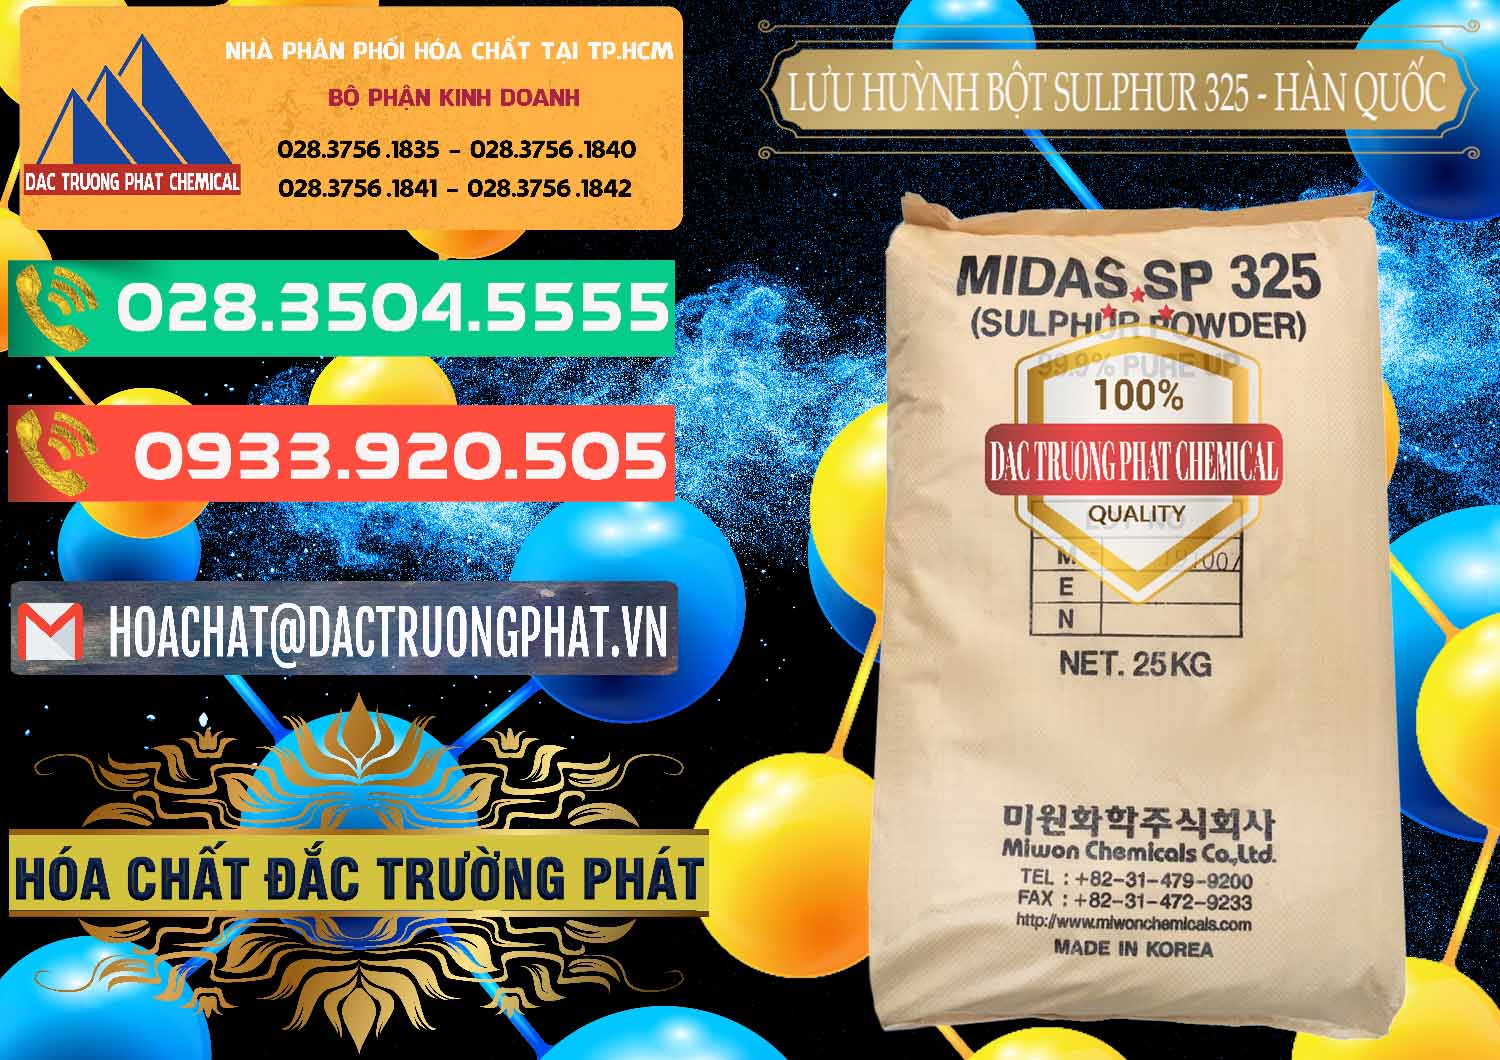 Cty chuyên bán _ phân phối Lưu huỳnh Bột - Sulfur Powder Midas SP 325 Hàn Quốc Korea - 0198 - Công ty chuyên cung cấp ( nhập khẩu ) hóa chất tại TP.HCM - congtyhoachat.com.vn